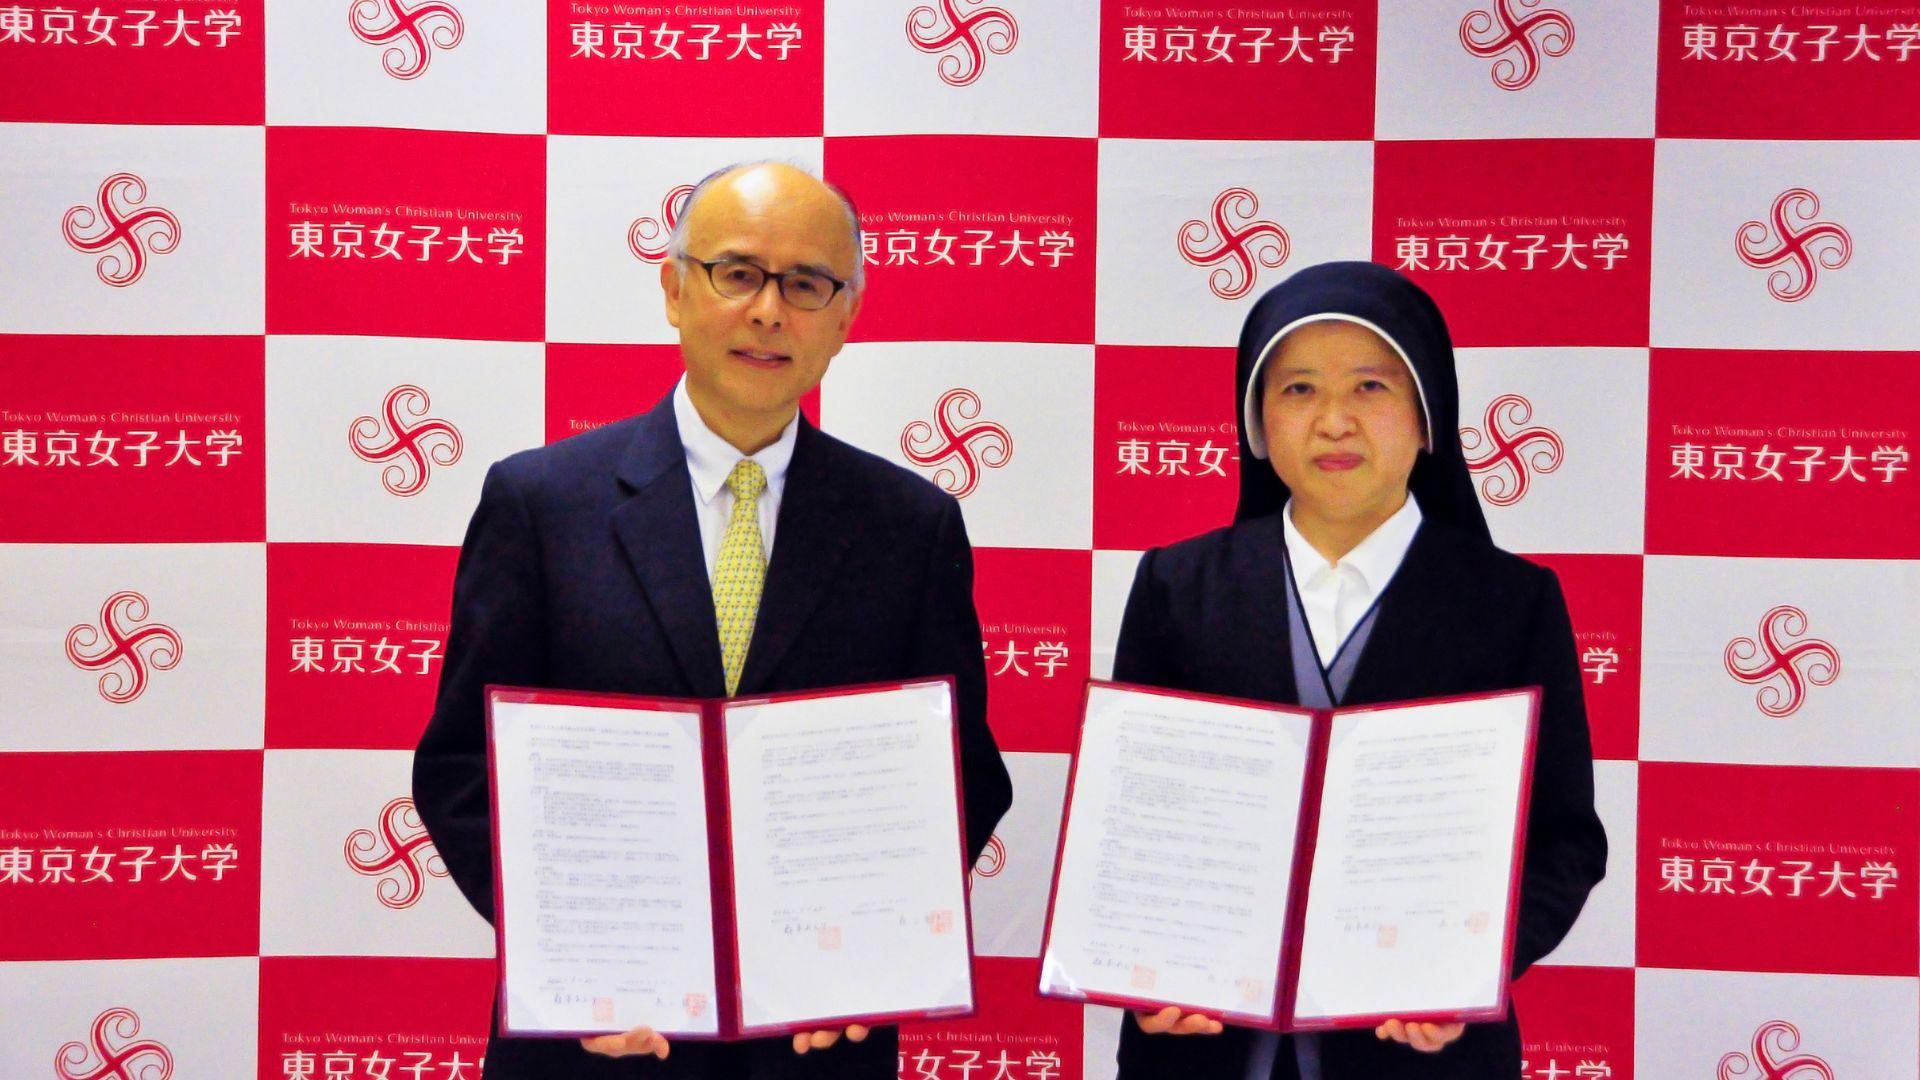 東京純心女子中学校・高等学校、国府台女子学院高等部および恵泉女学園中学・高等学校との高大連携協定を締結 -- 7校目、8校目、9校目の高大連携協定締結